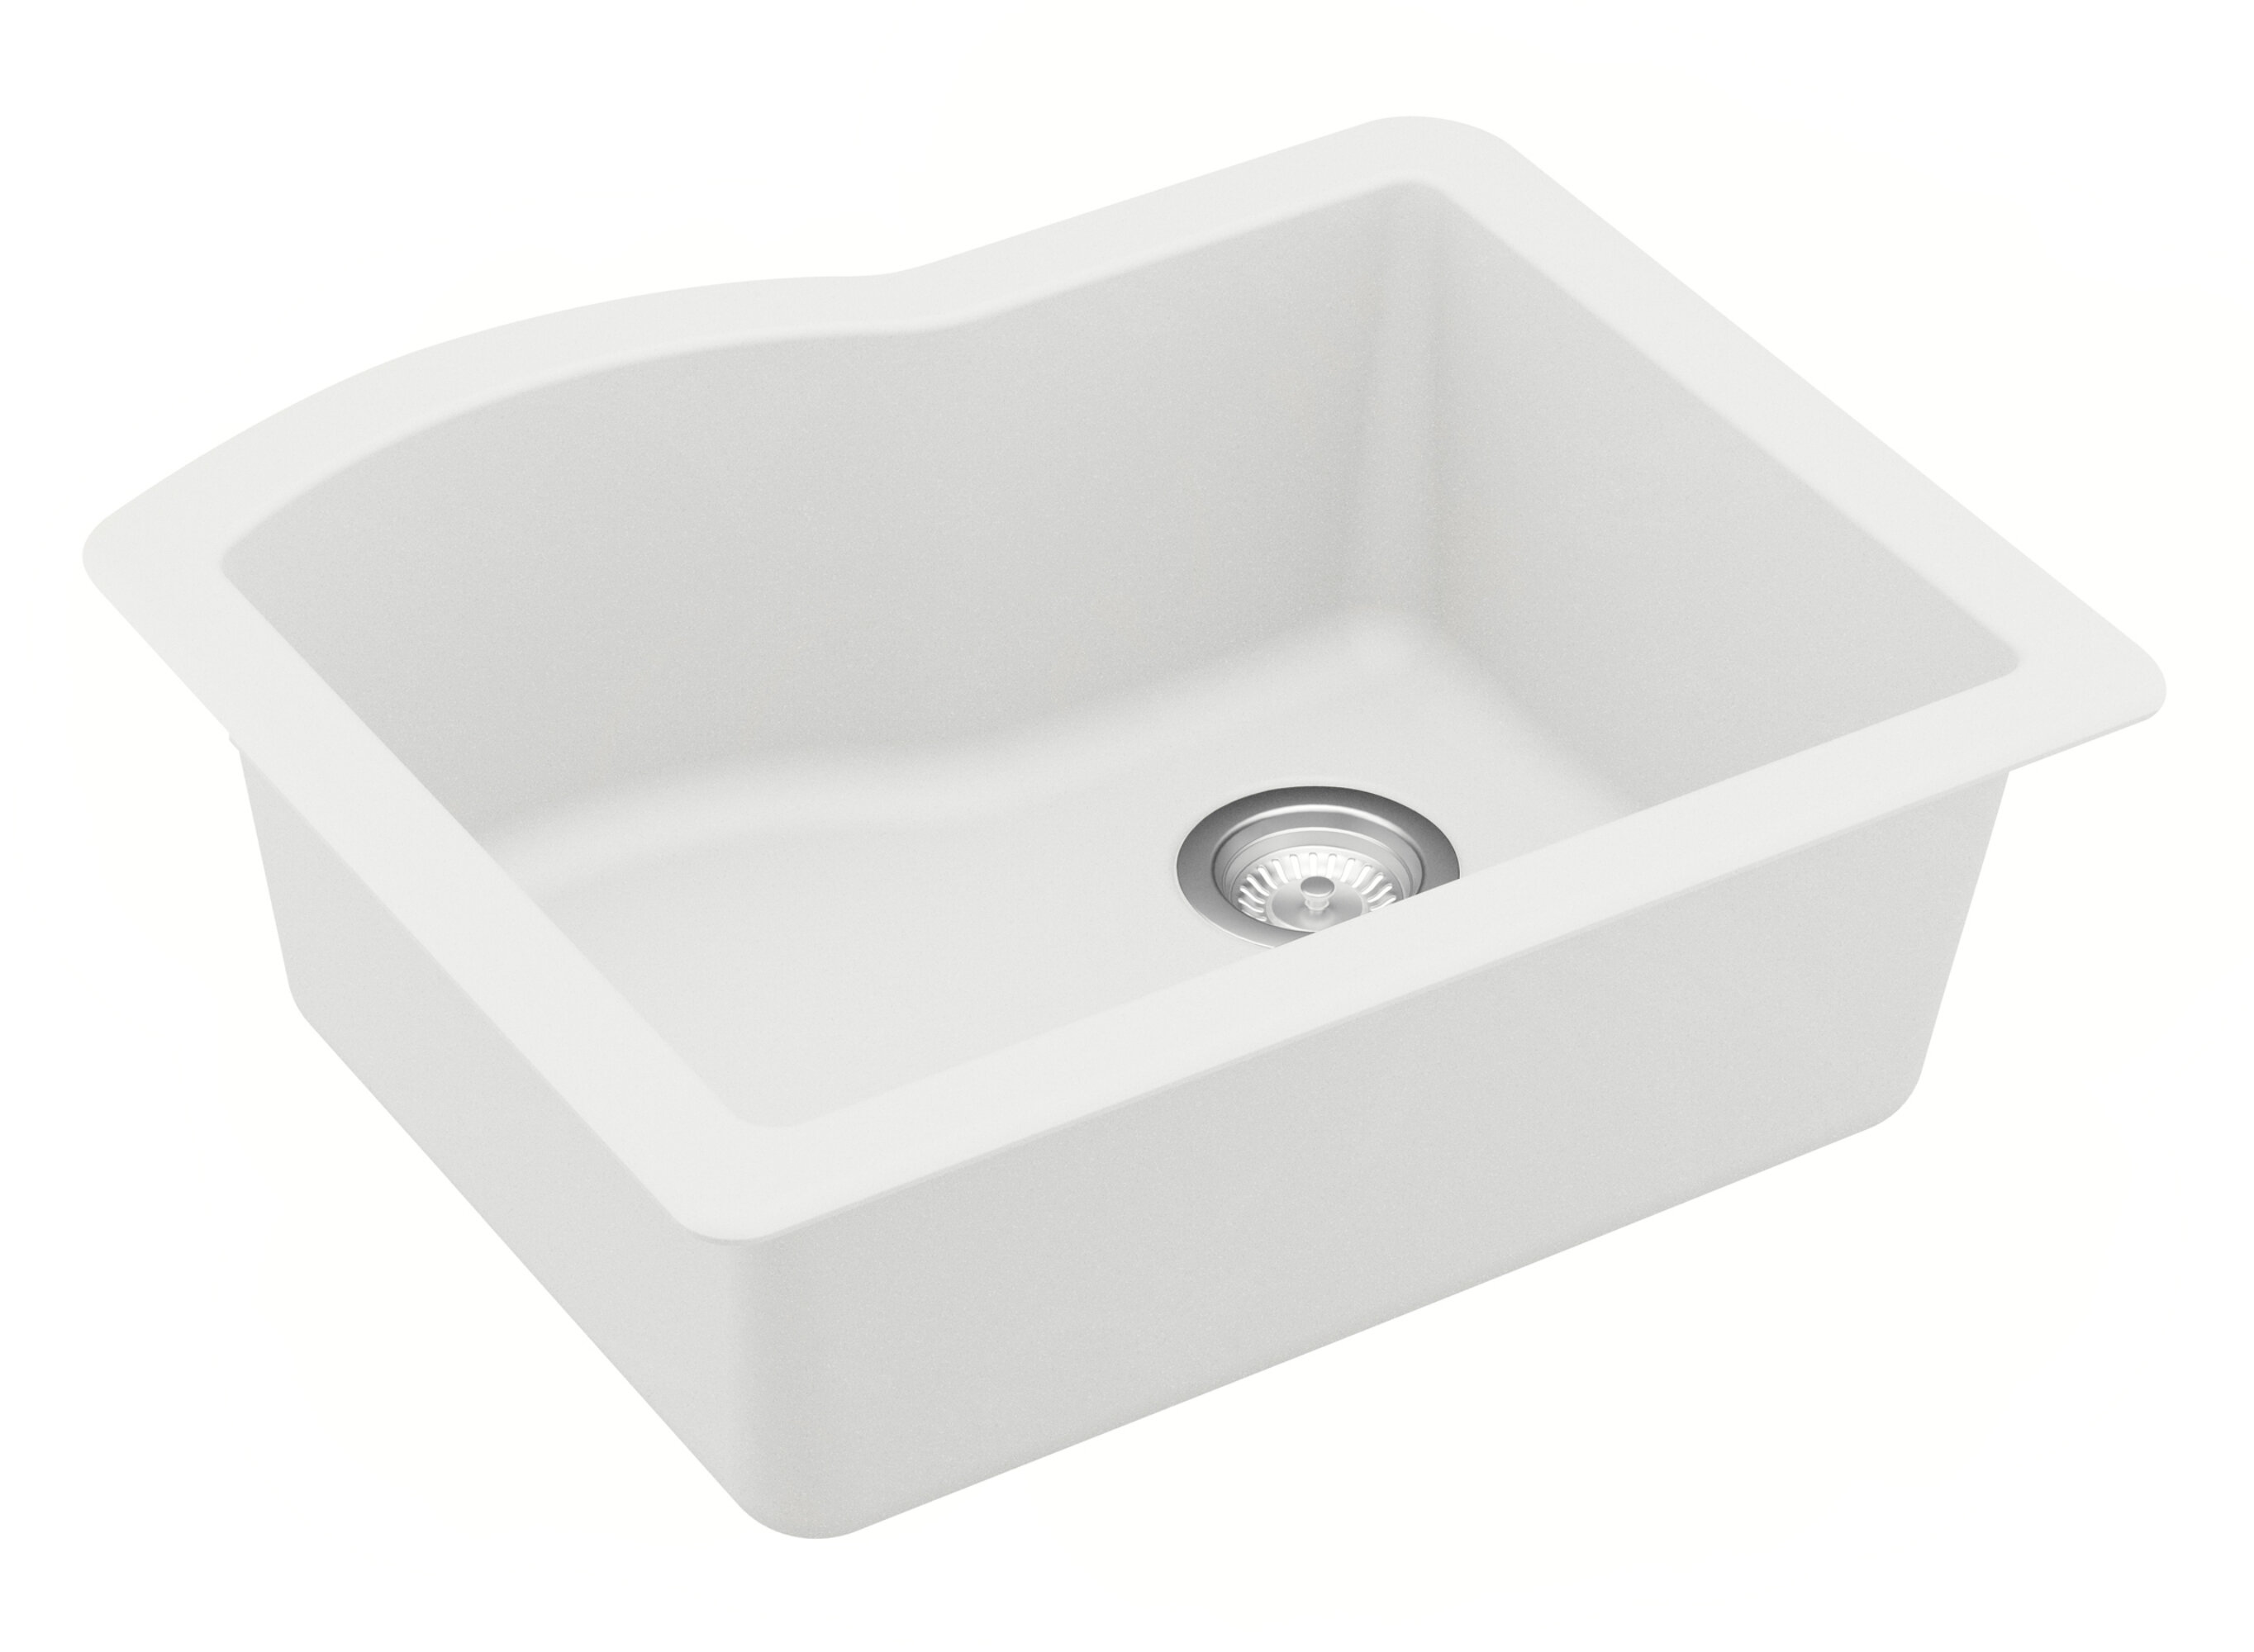 https://assets.wfcdn.com/im/91650642/compr-r85/1346/134610335/karran-quartz-24-x-20-34-single-bowl-undermount-kitchen-sink-kit.jpg